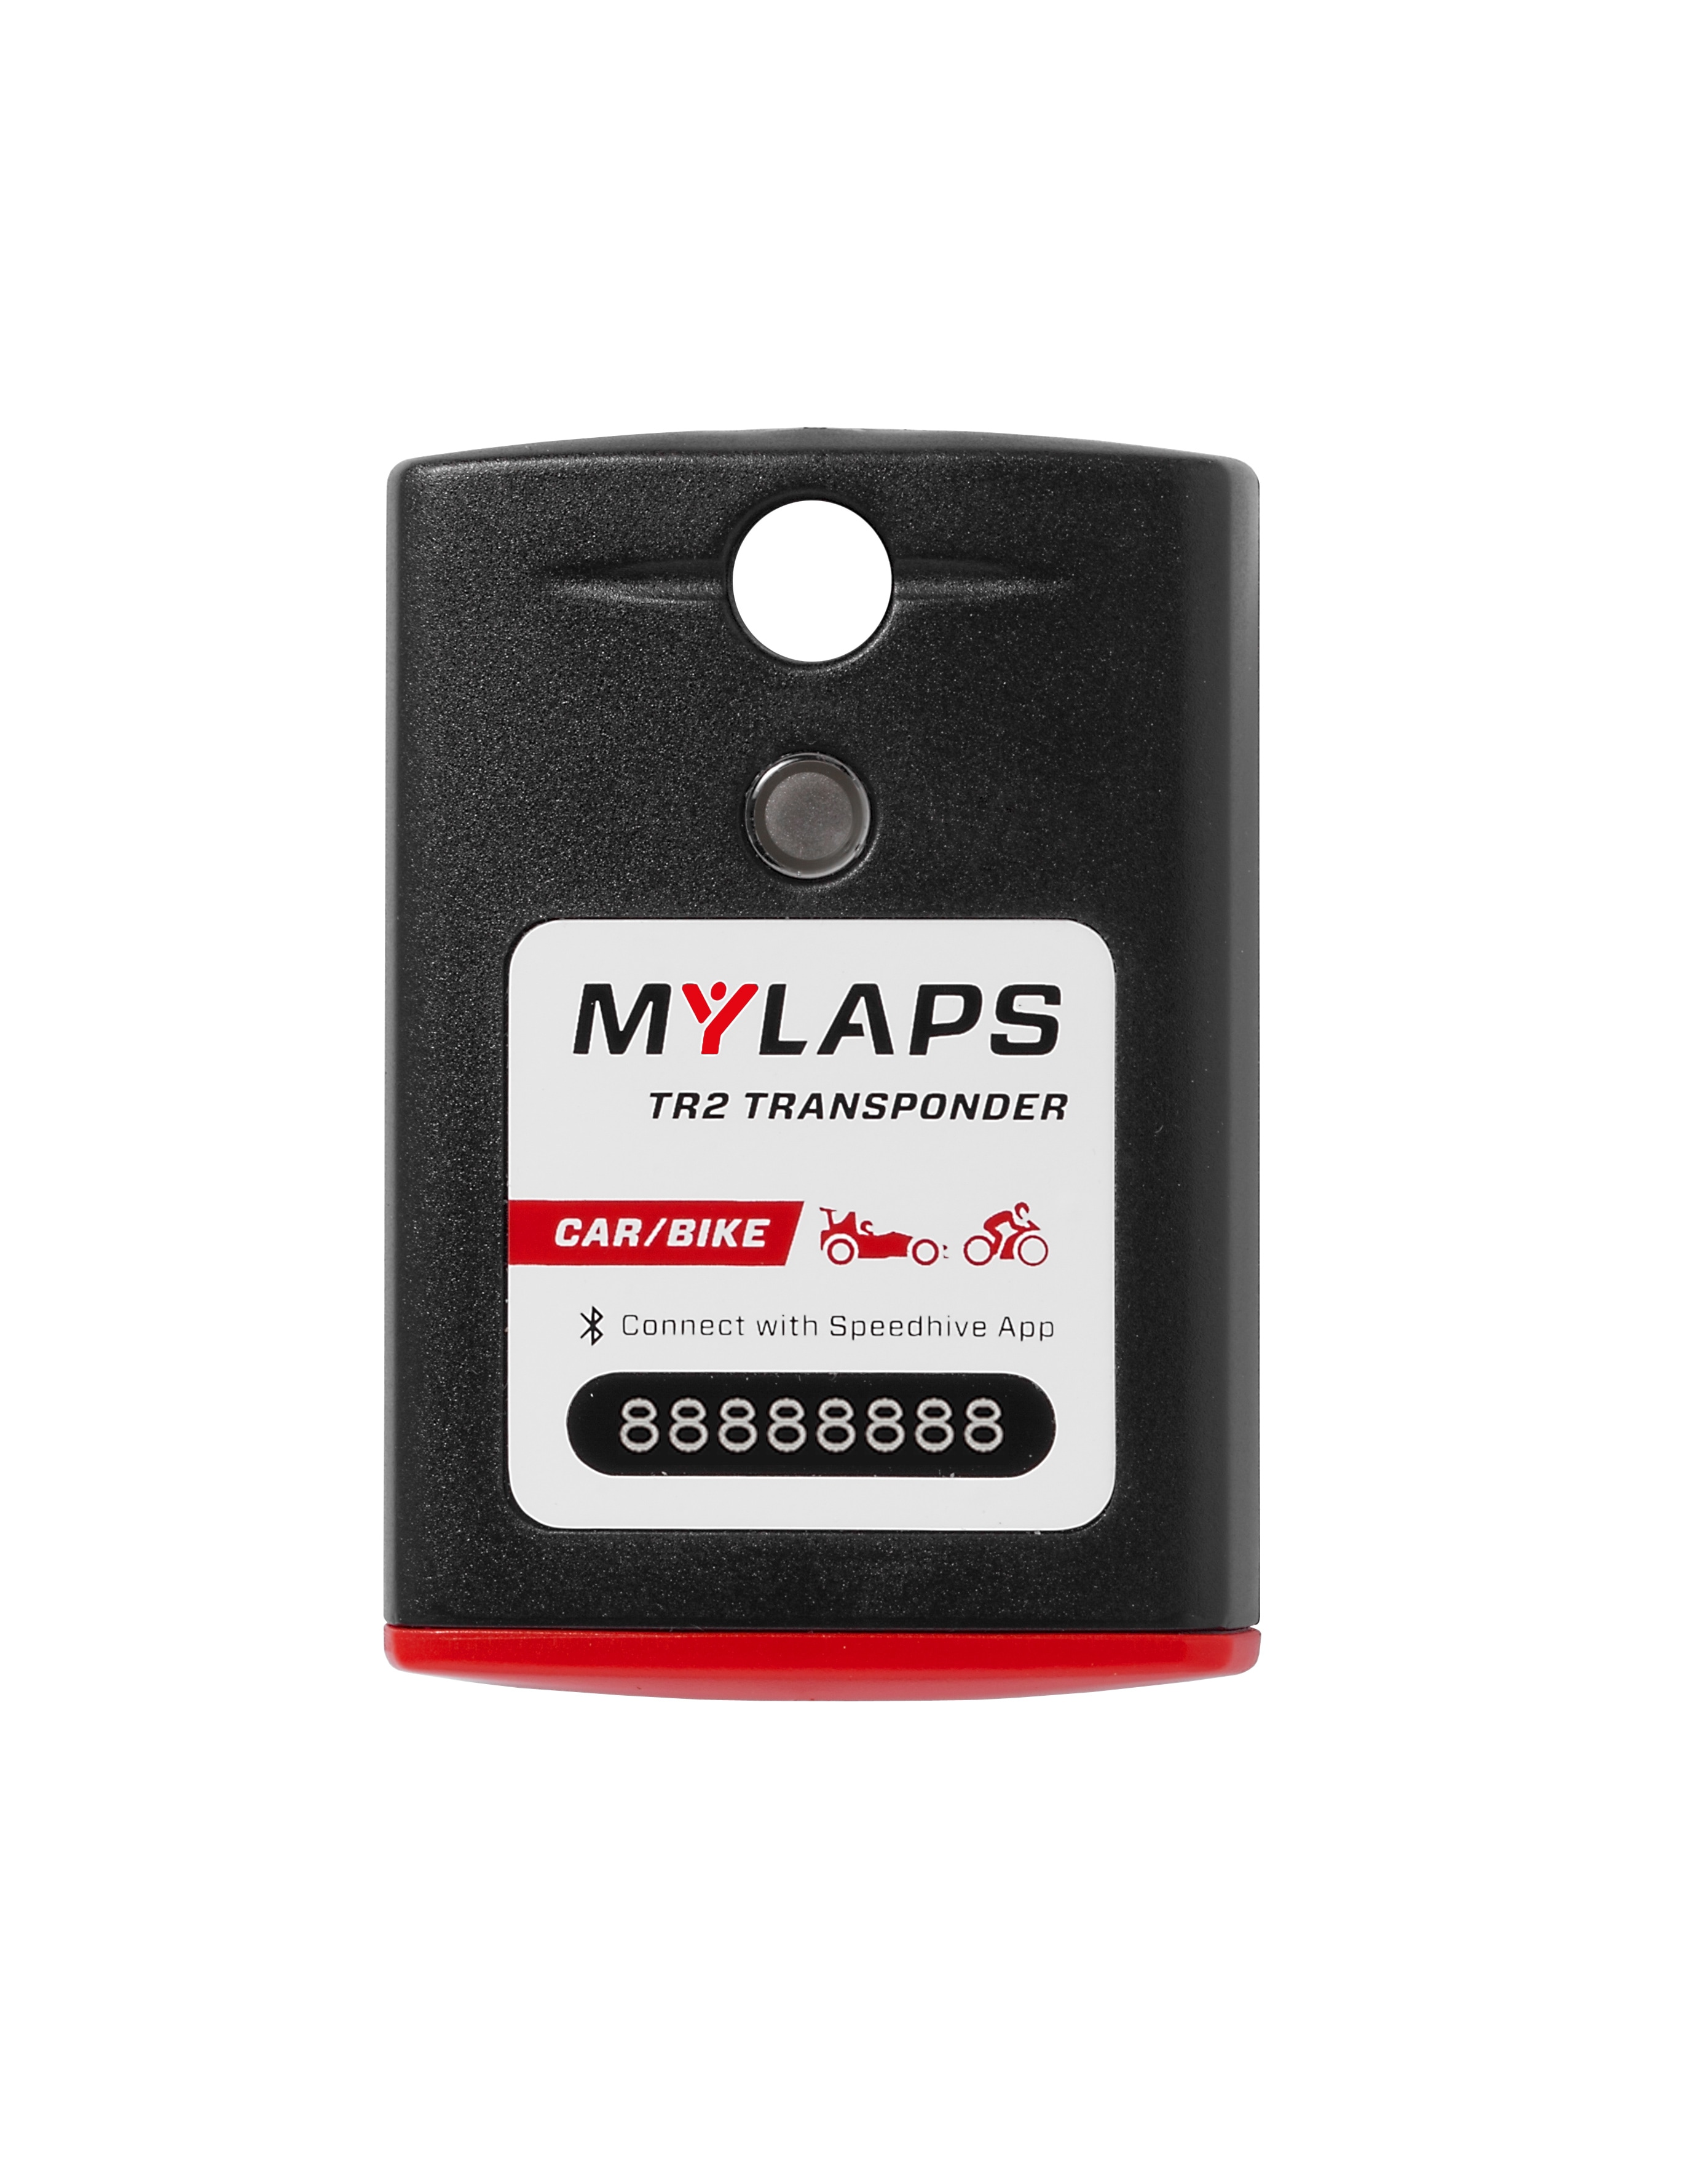 Transponderi MyLaps TR2, autoon/moottoripyörään  1 vuosi